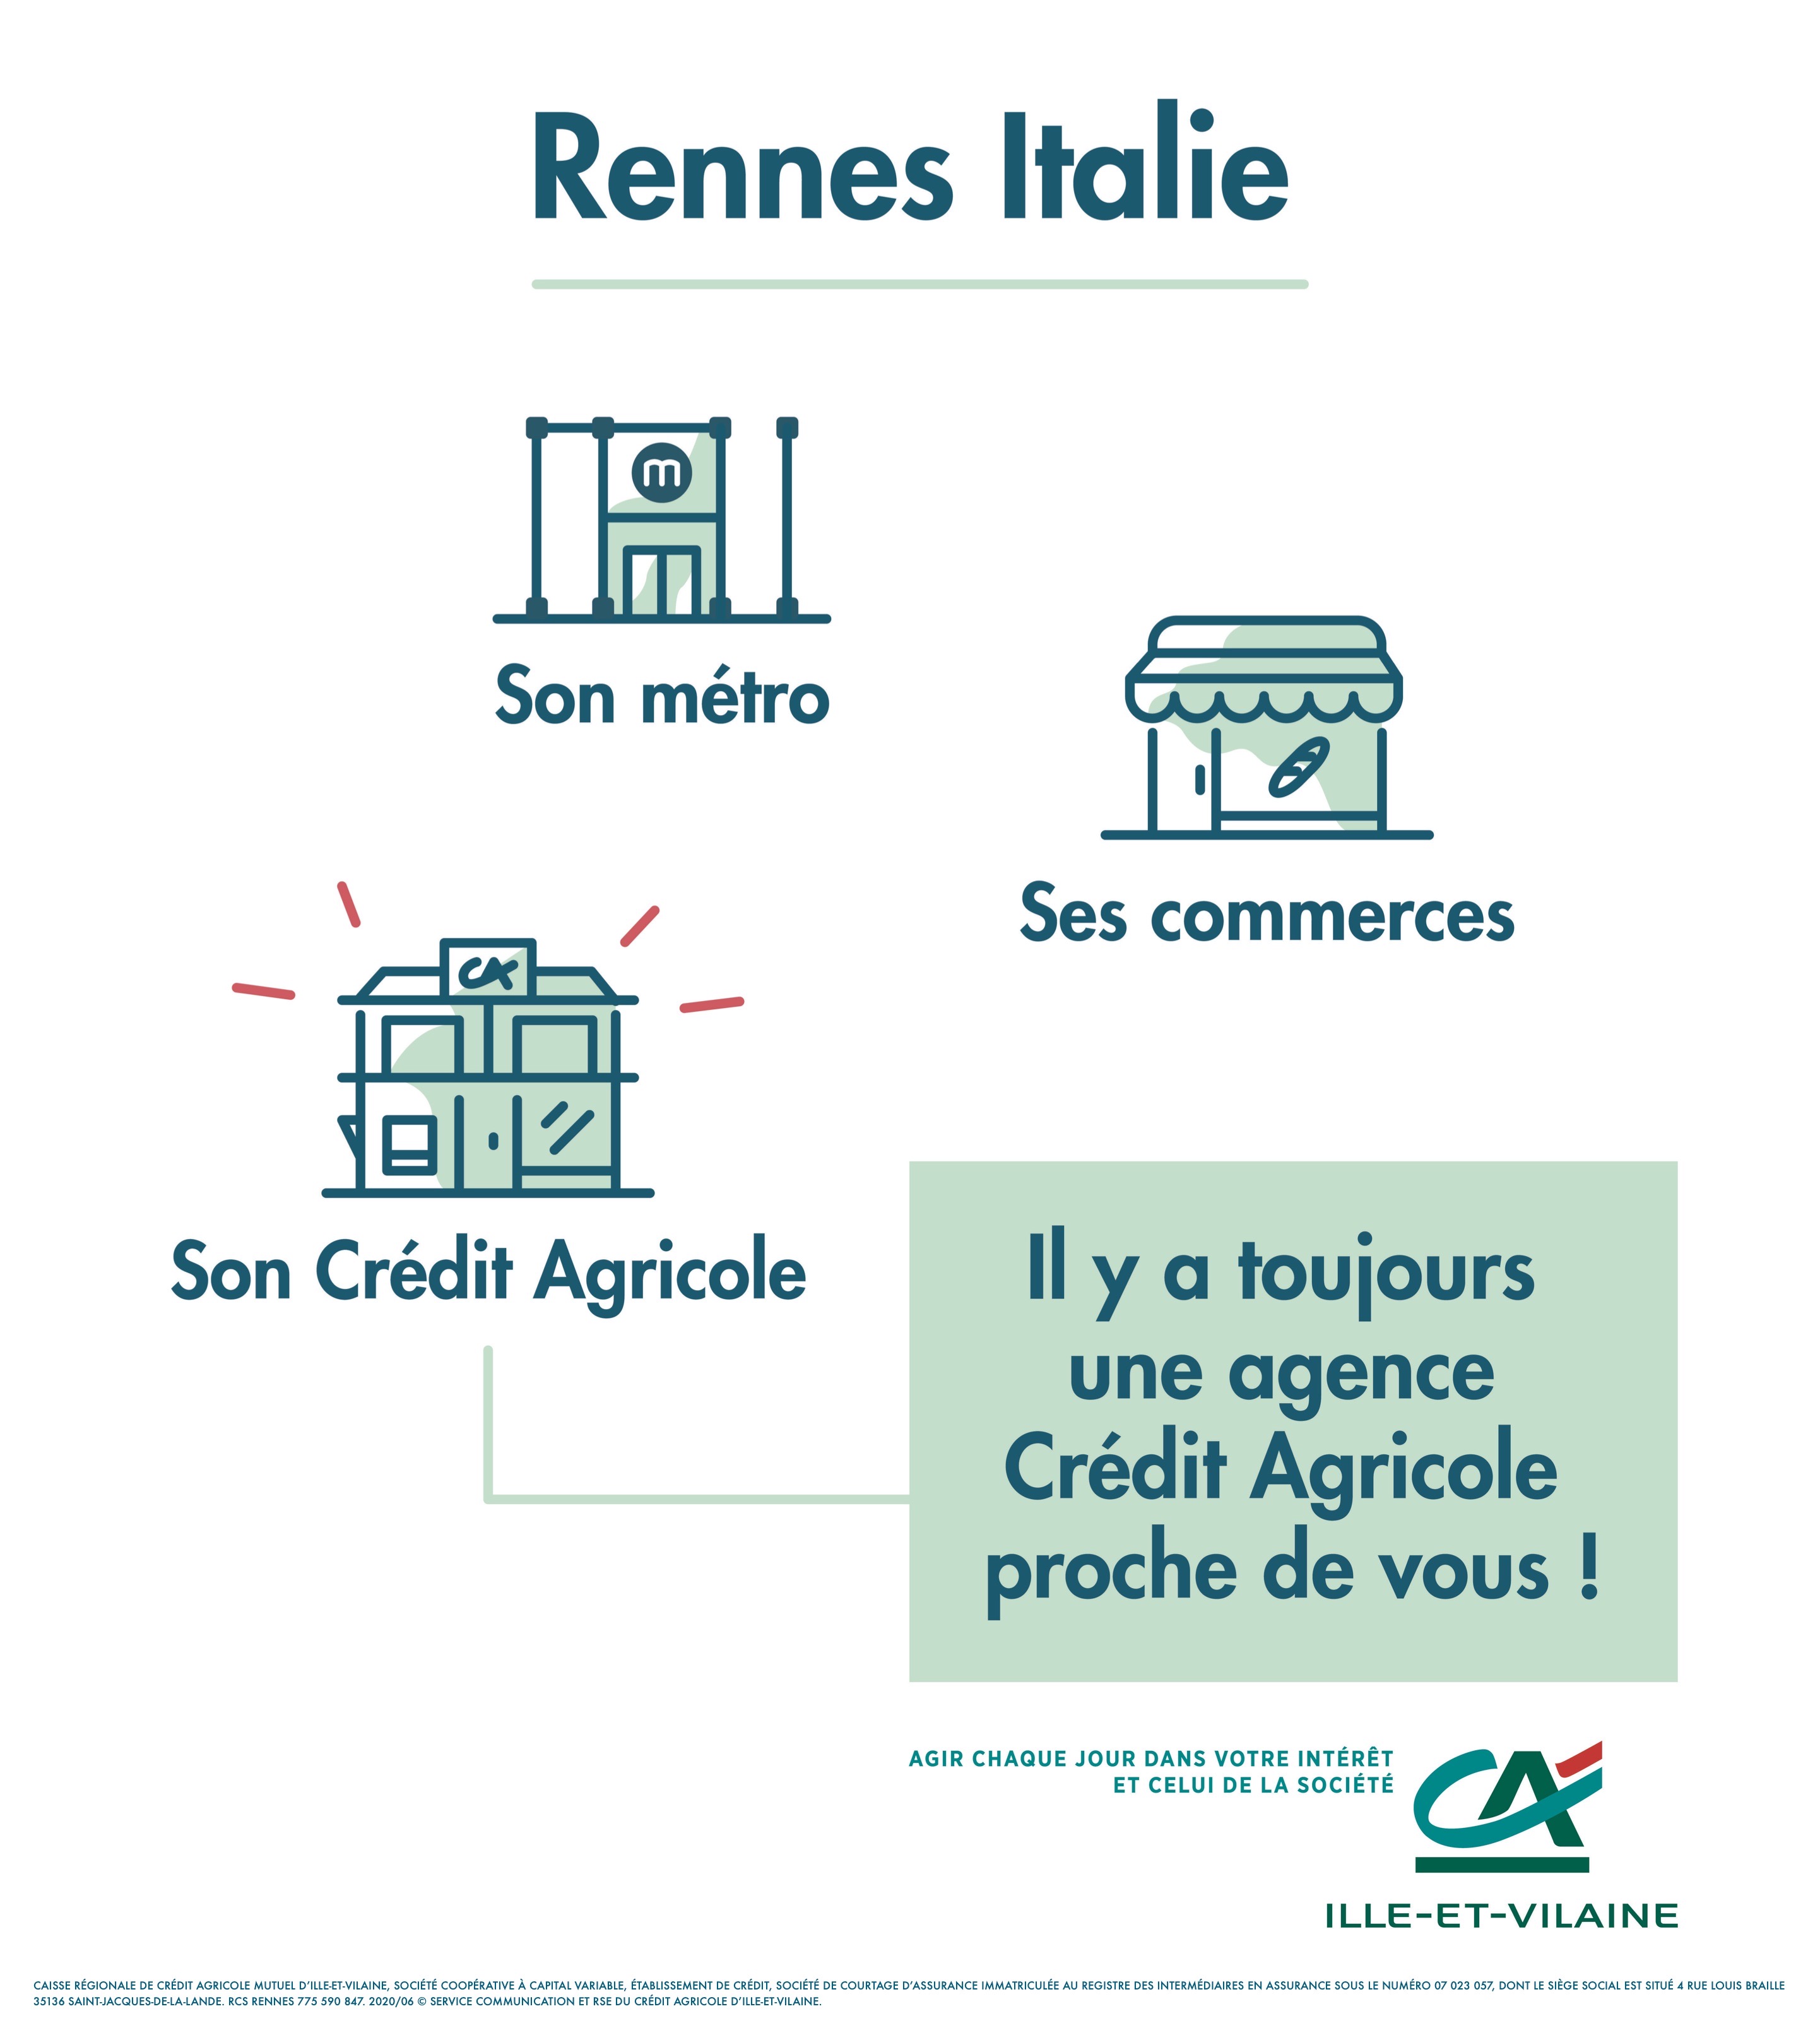 CRÉDIT AGRICOLE ILLE-ET-VILAINE – RENNES ITALIE